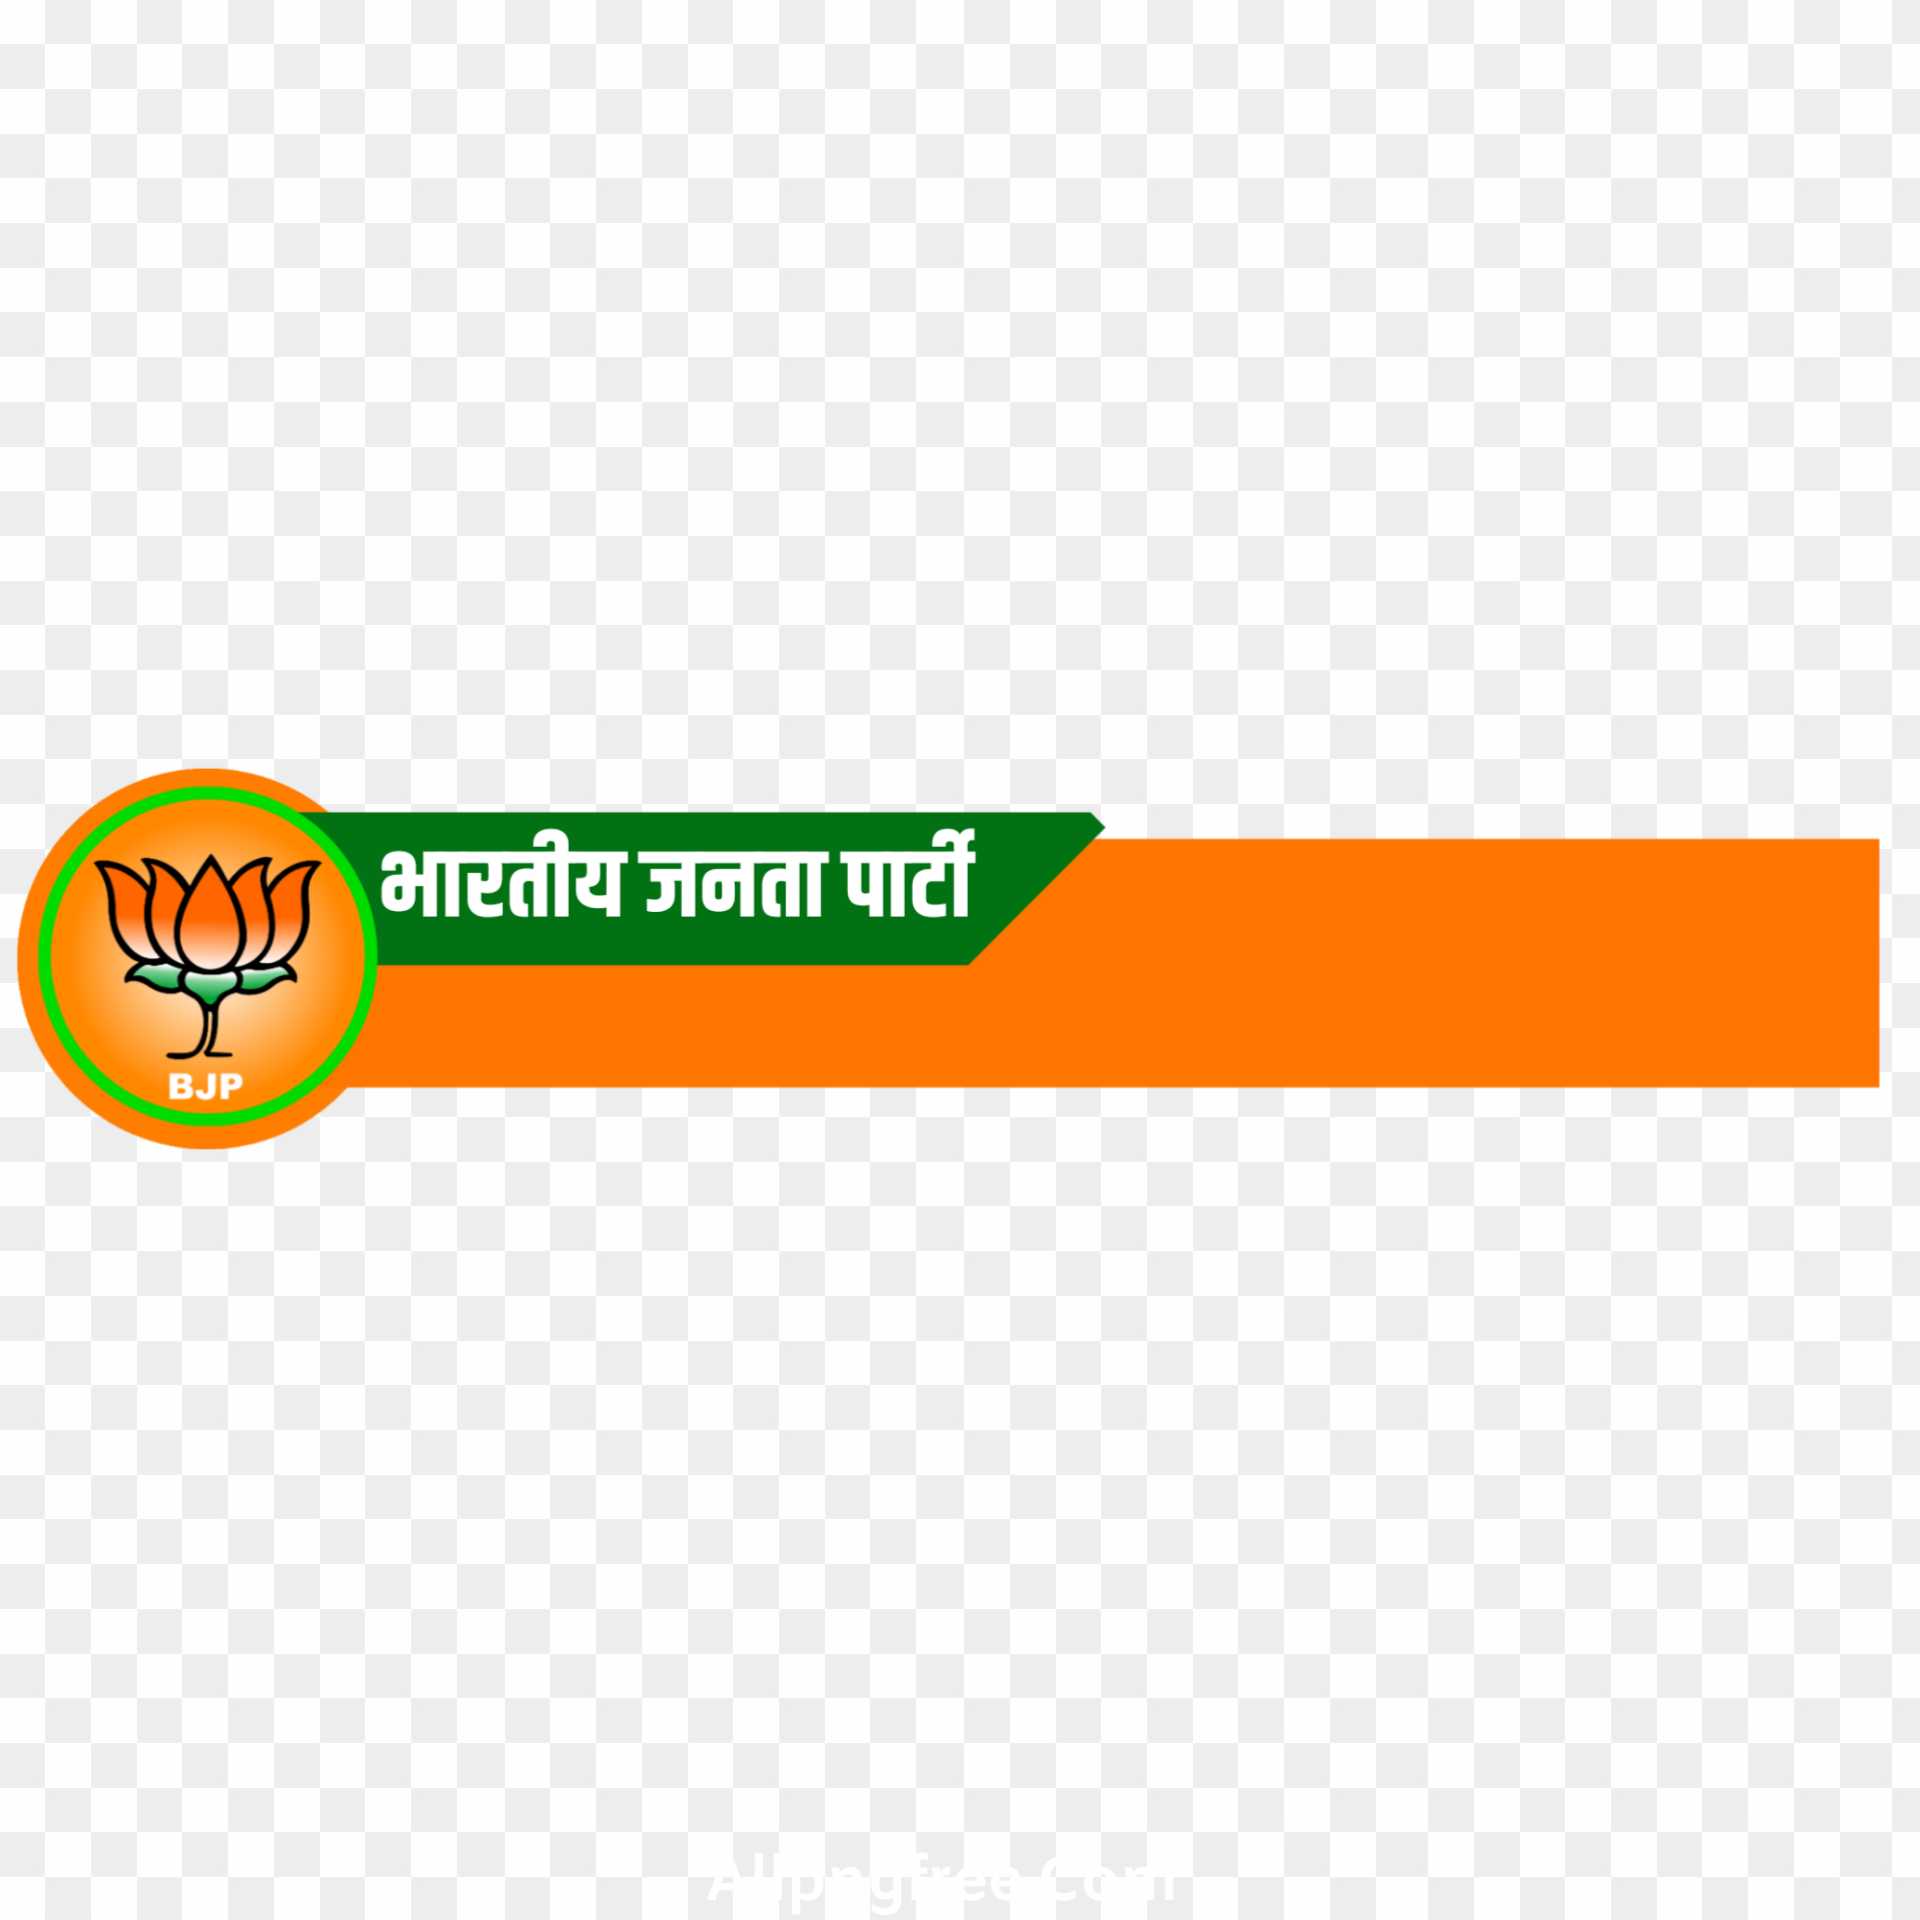 Bhartiya Janata Party BJP intro banner png images 